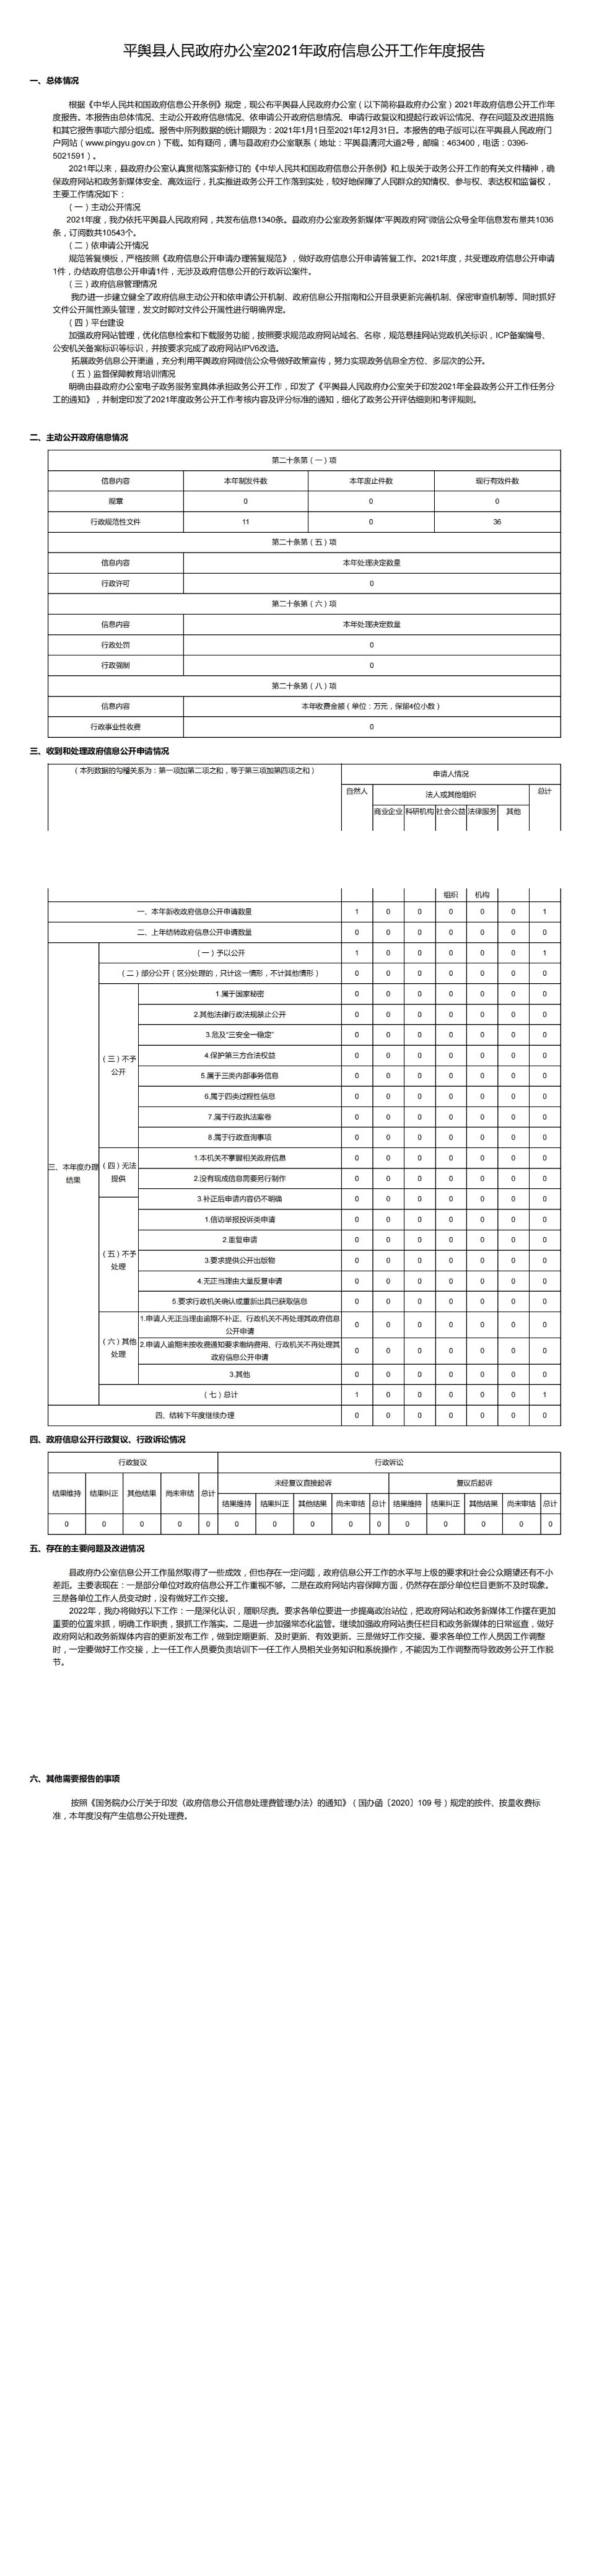 平舆县人民政府办公室2021年政府信息公开工作年度报告_00.jpg